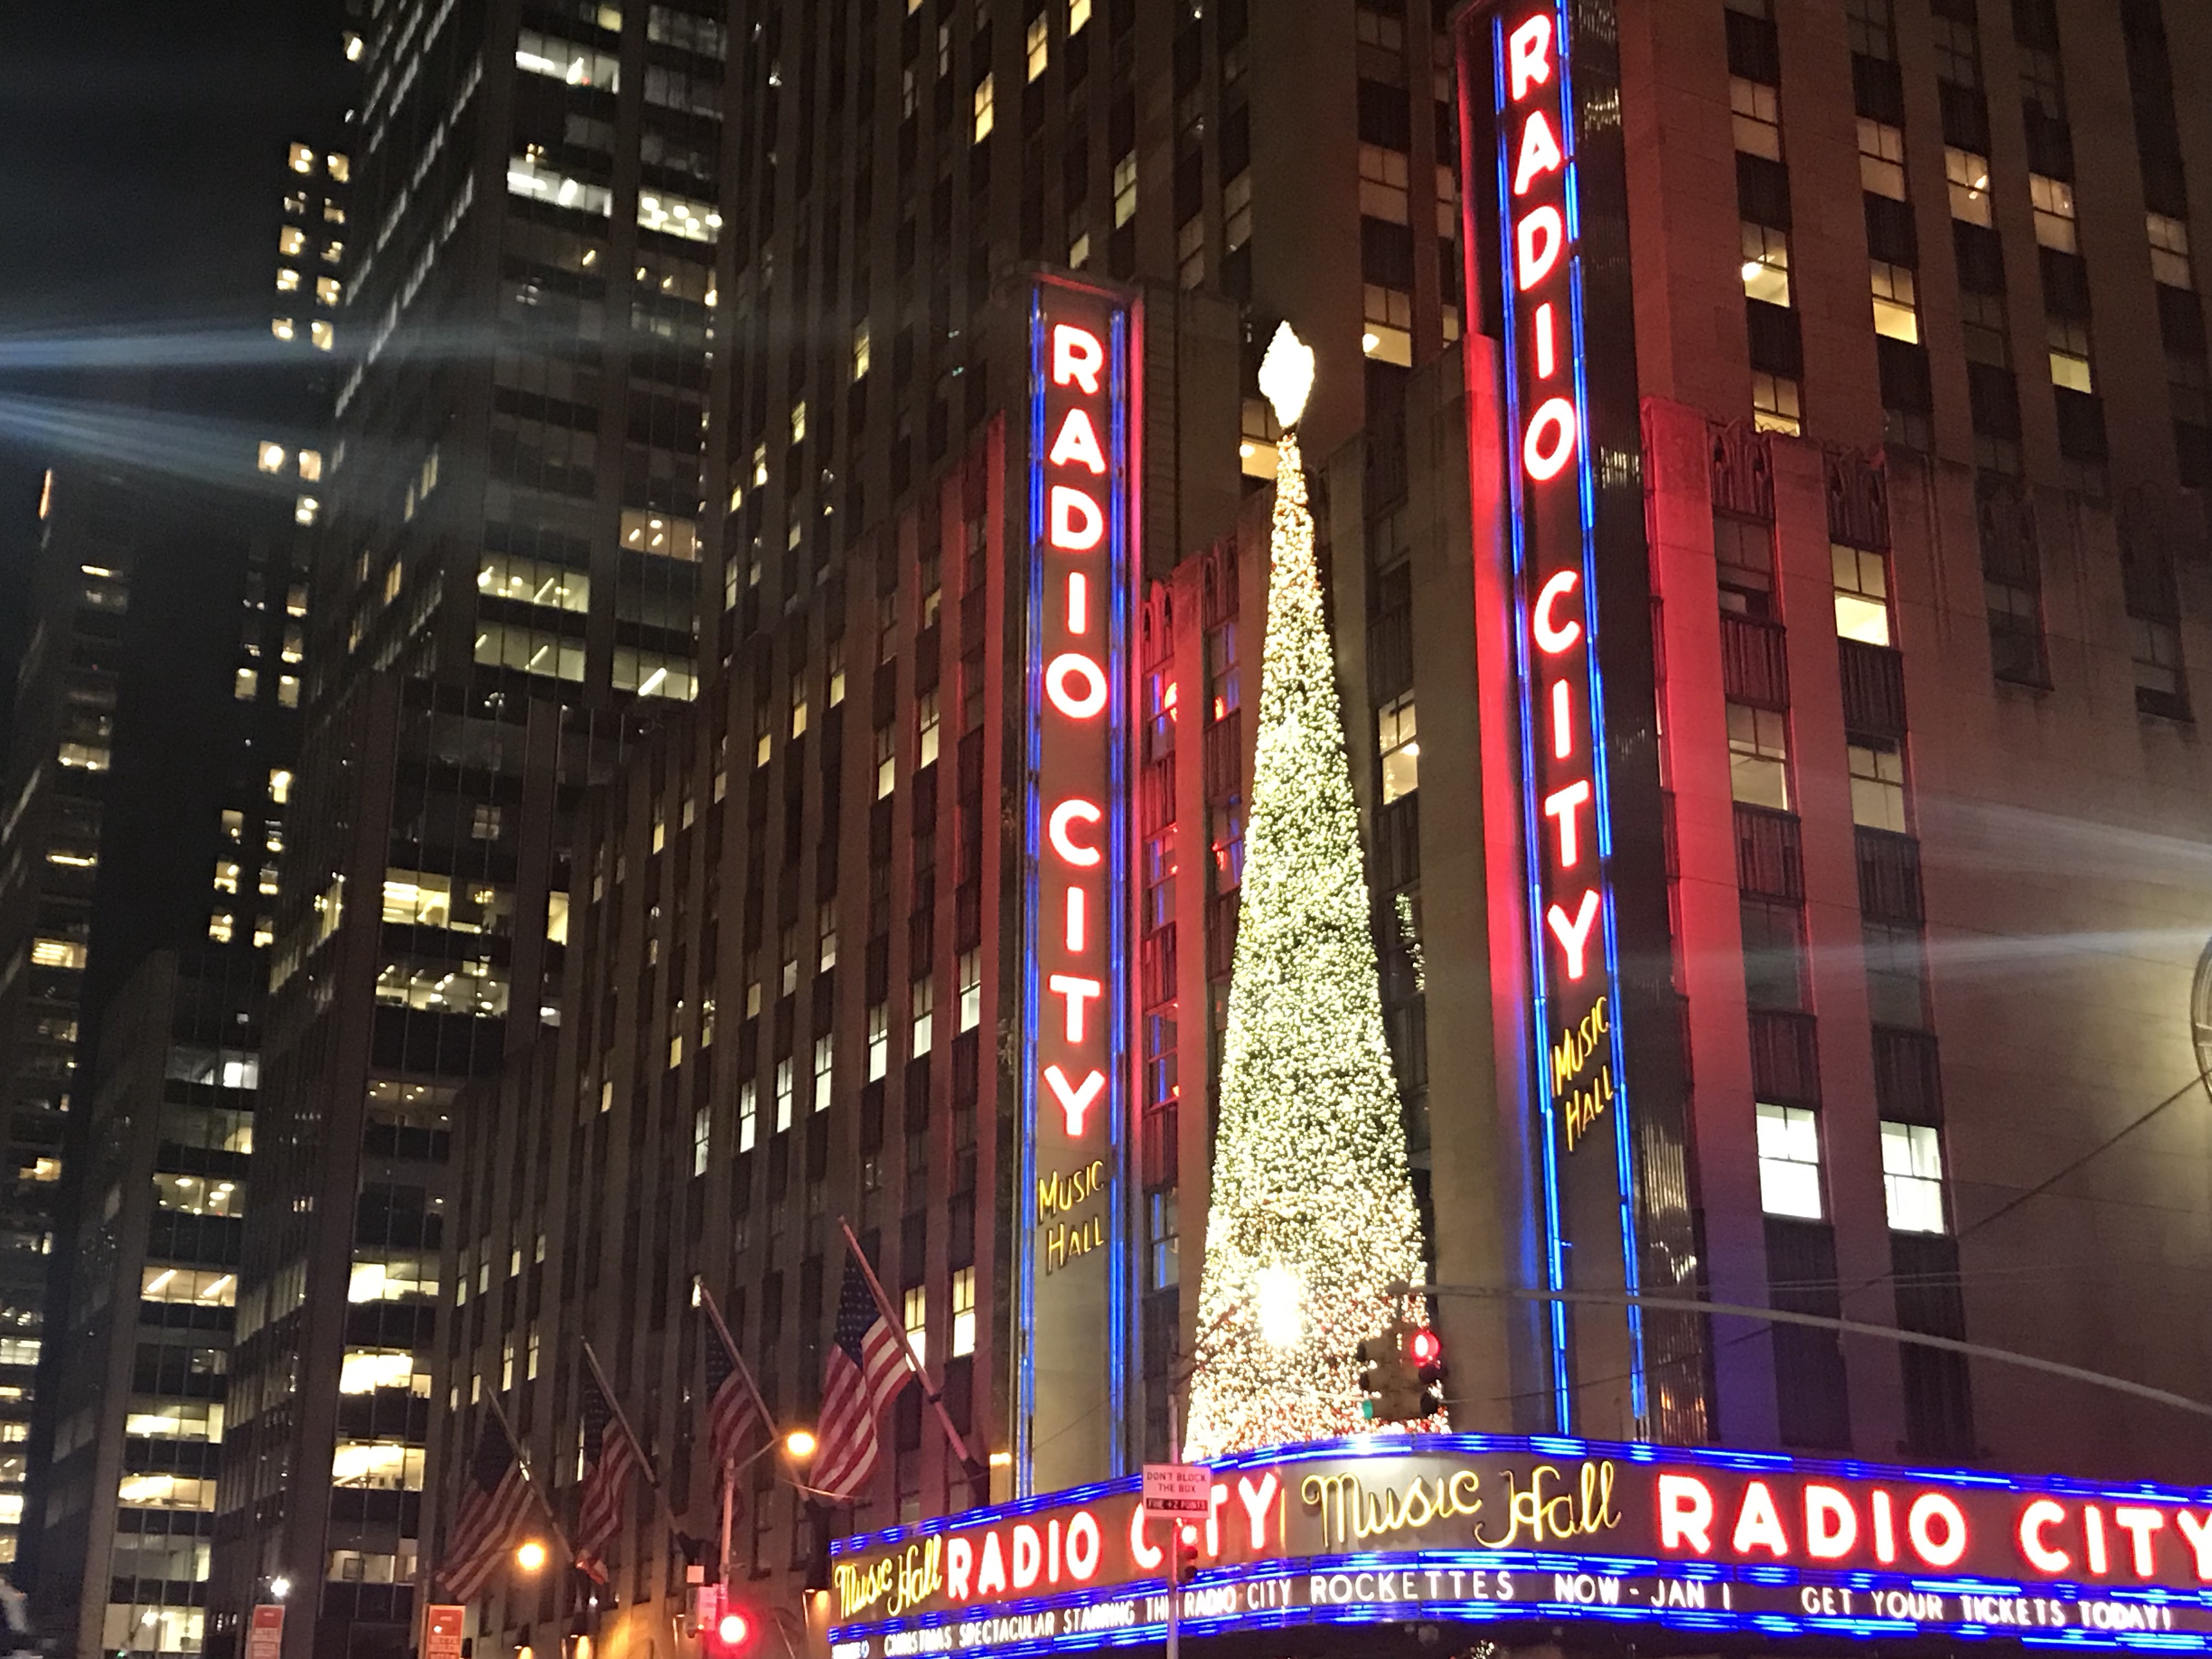 Radio City Music Hall at Christmas